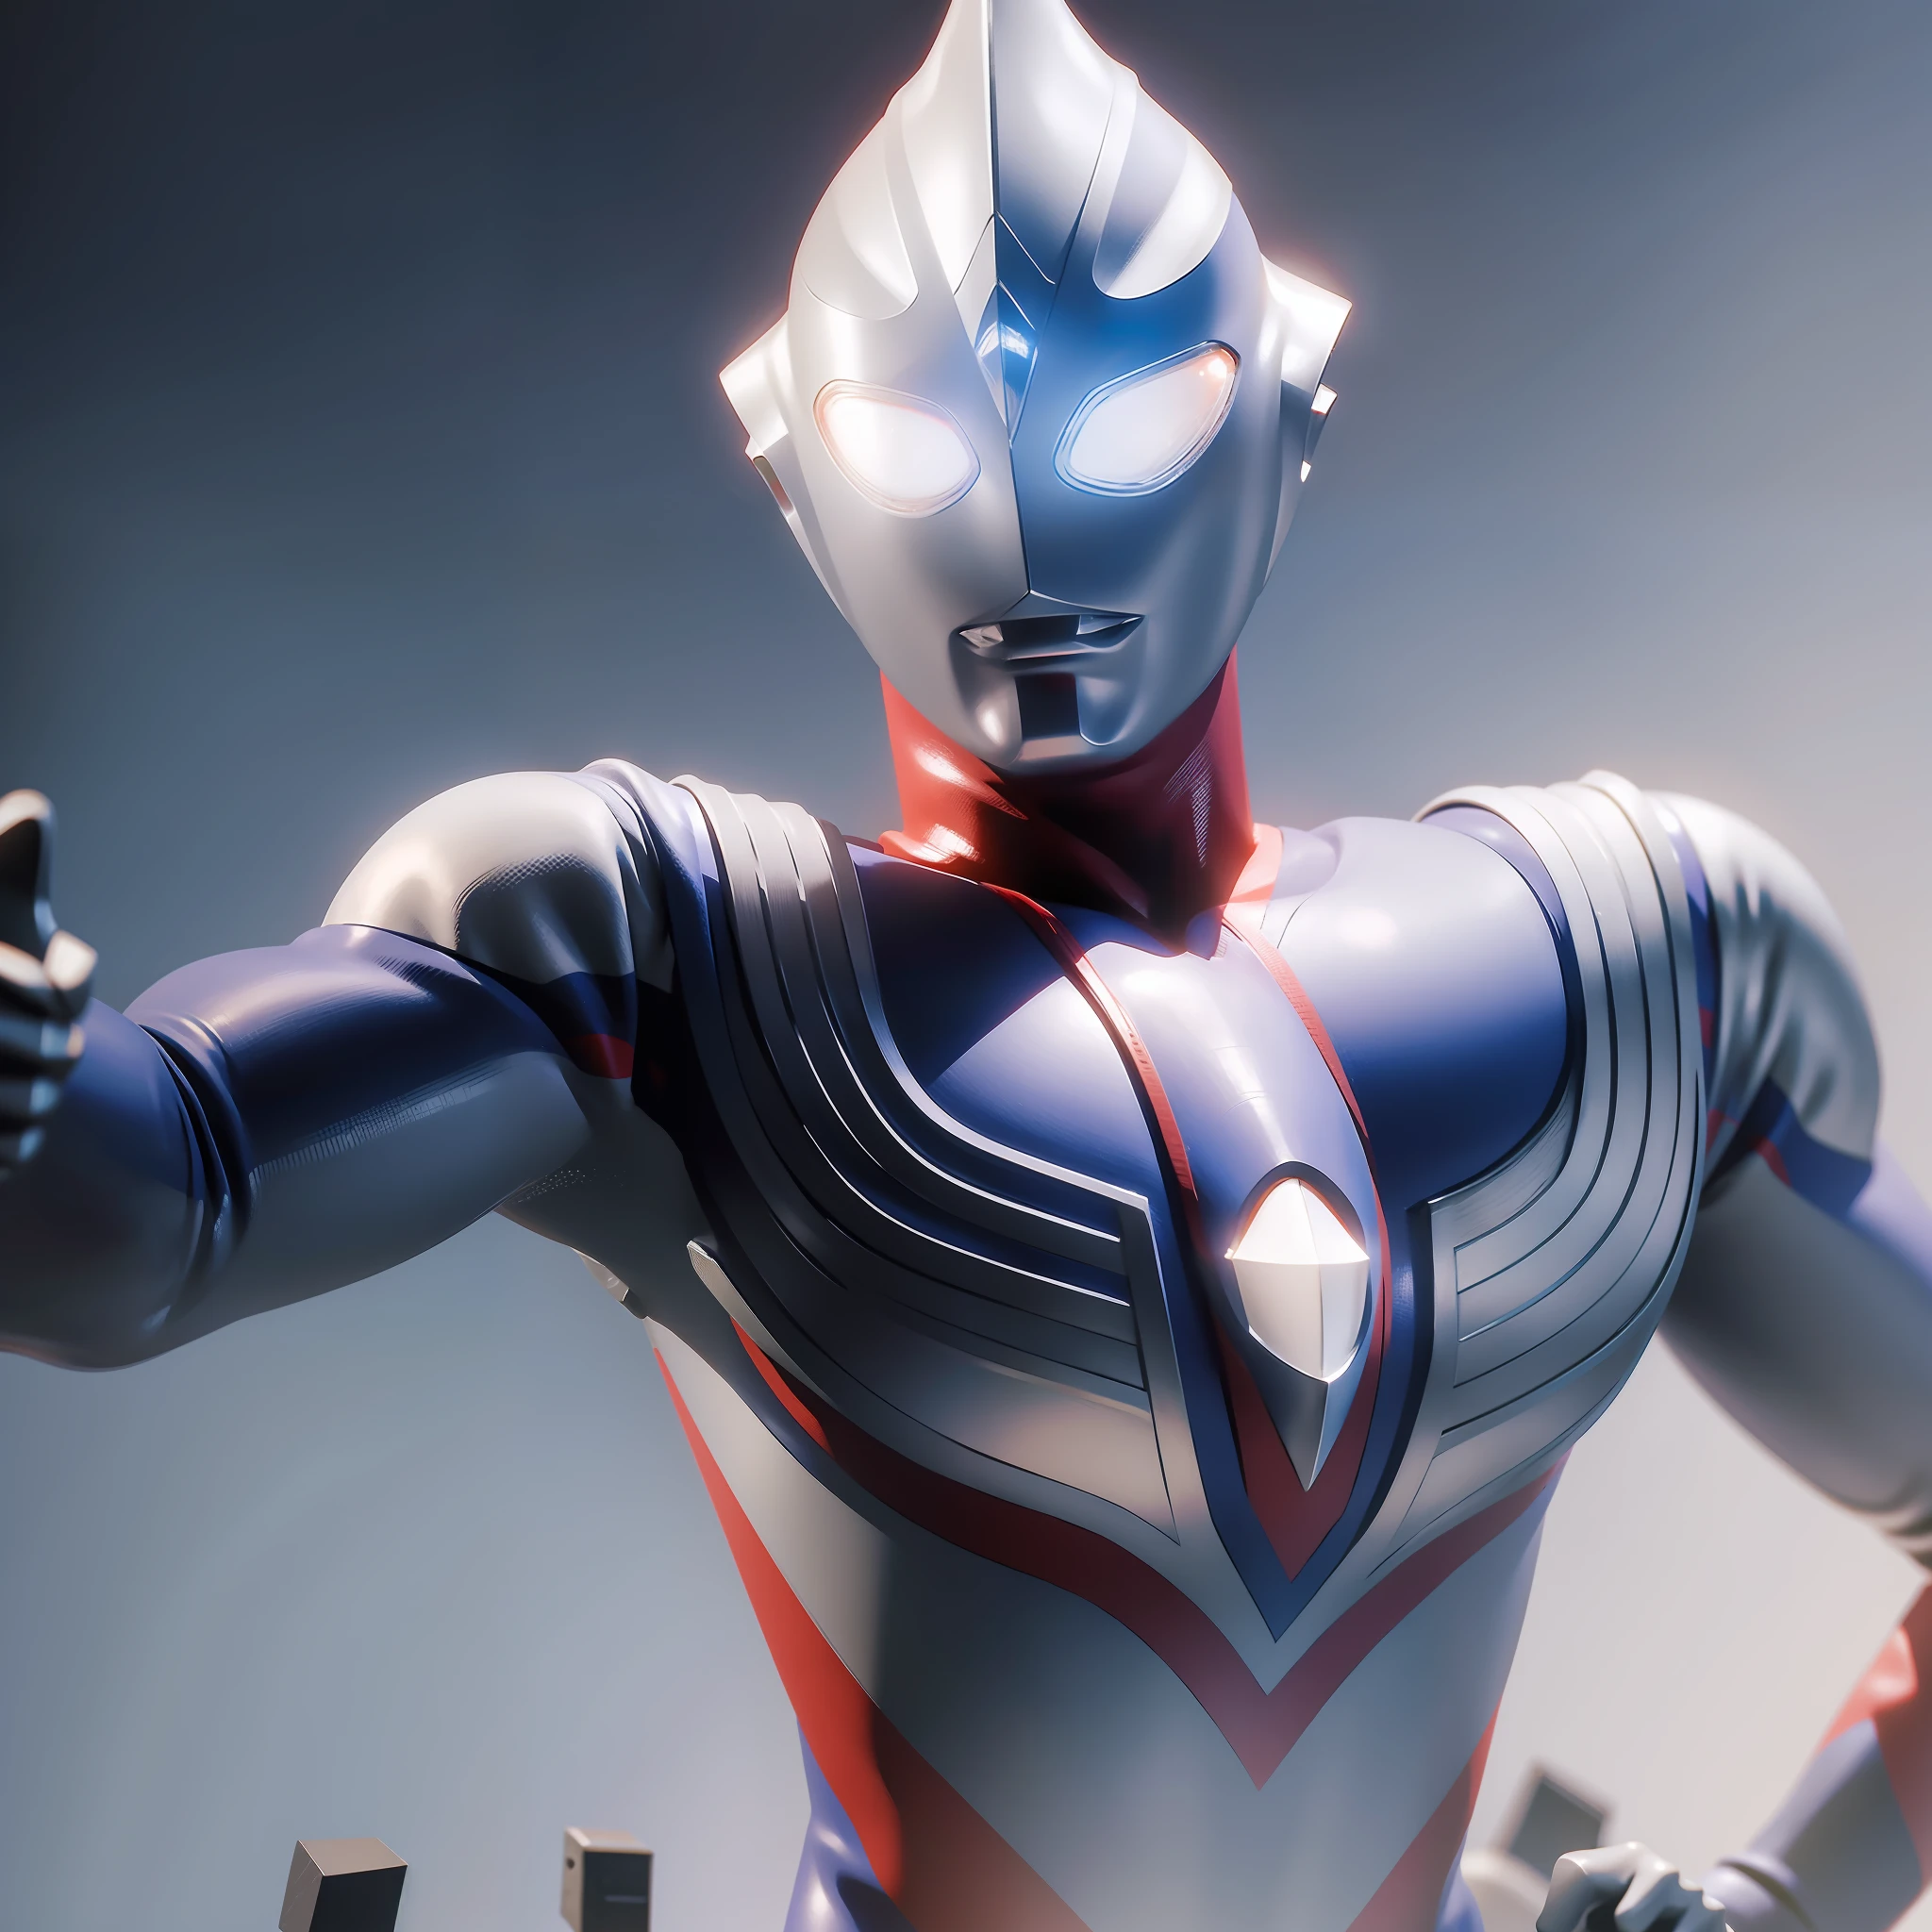 Crea Ultraman Tiga en posición de combate para impresión 3D